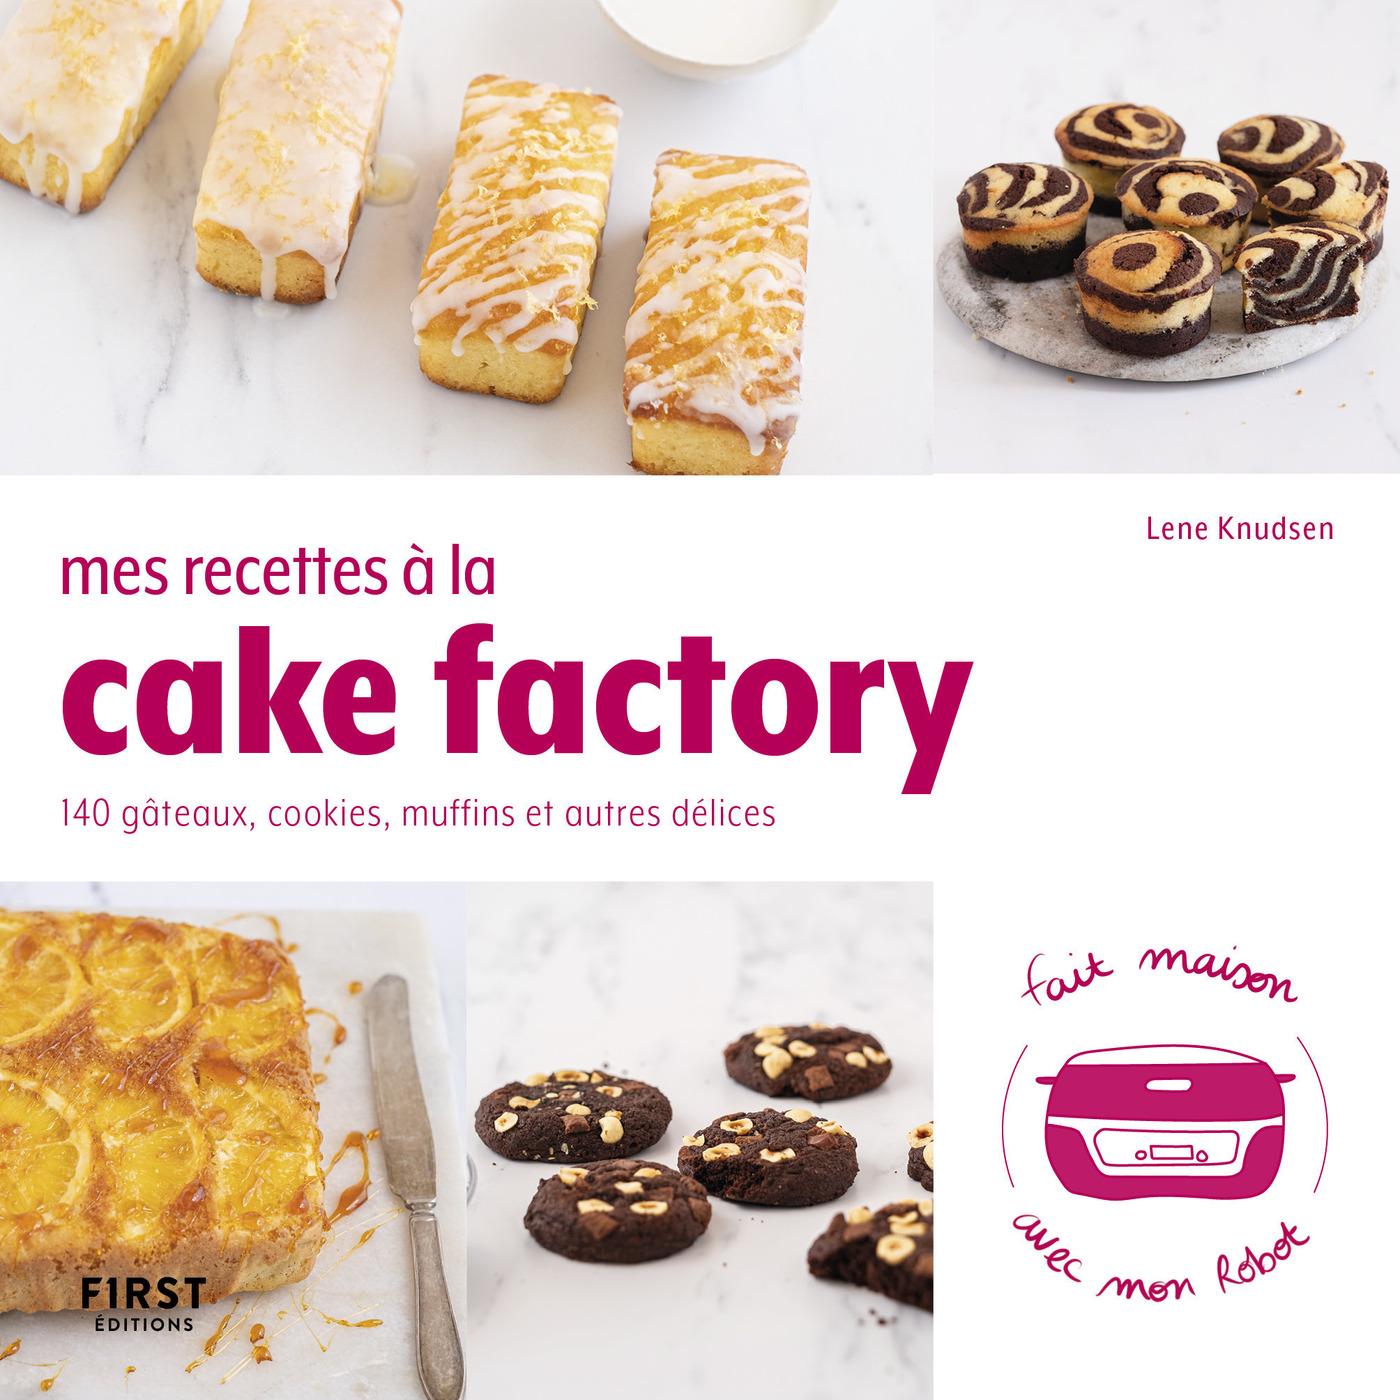 Ebook Mes recettes à la cake factory : Livre de cuisine, 140 recettes  faciles, recettes salées, desserts maison et pâtisserie, livre de recettes cake  factory à réaliser chez soi par Lene Knudsen - 7Switch